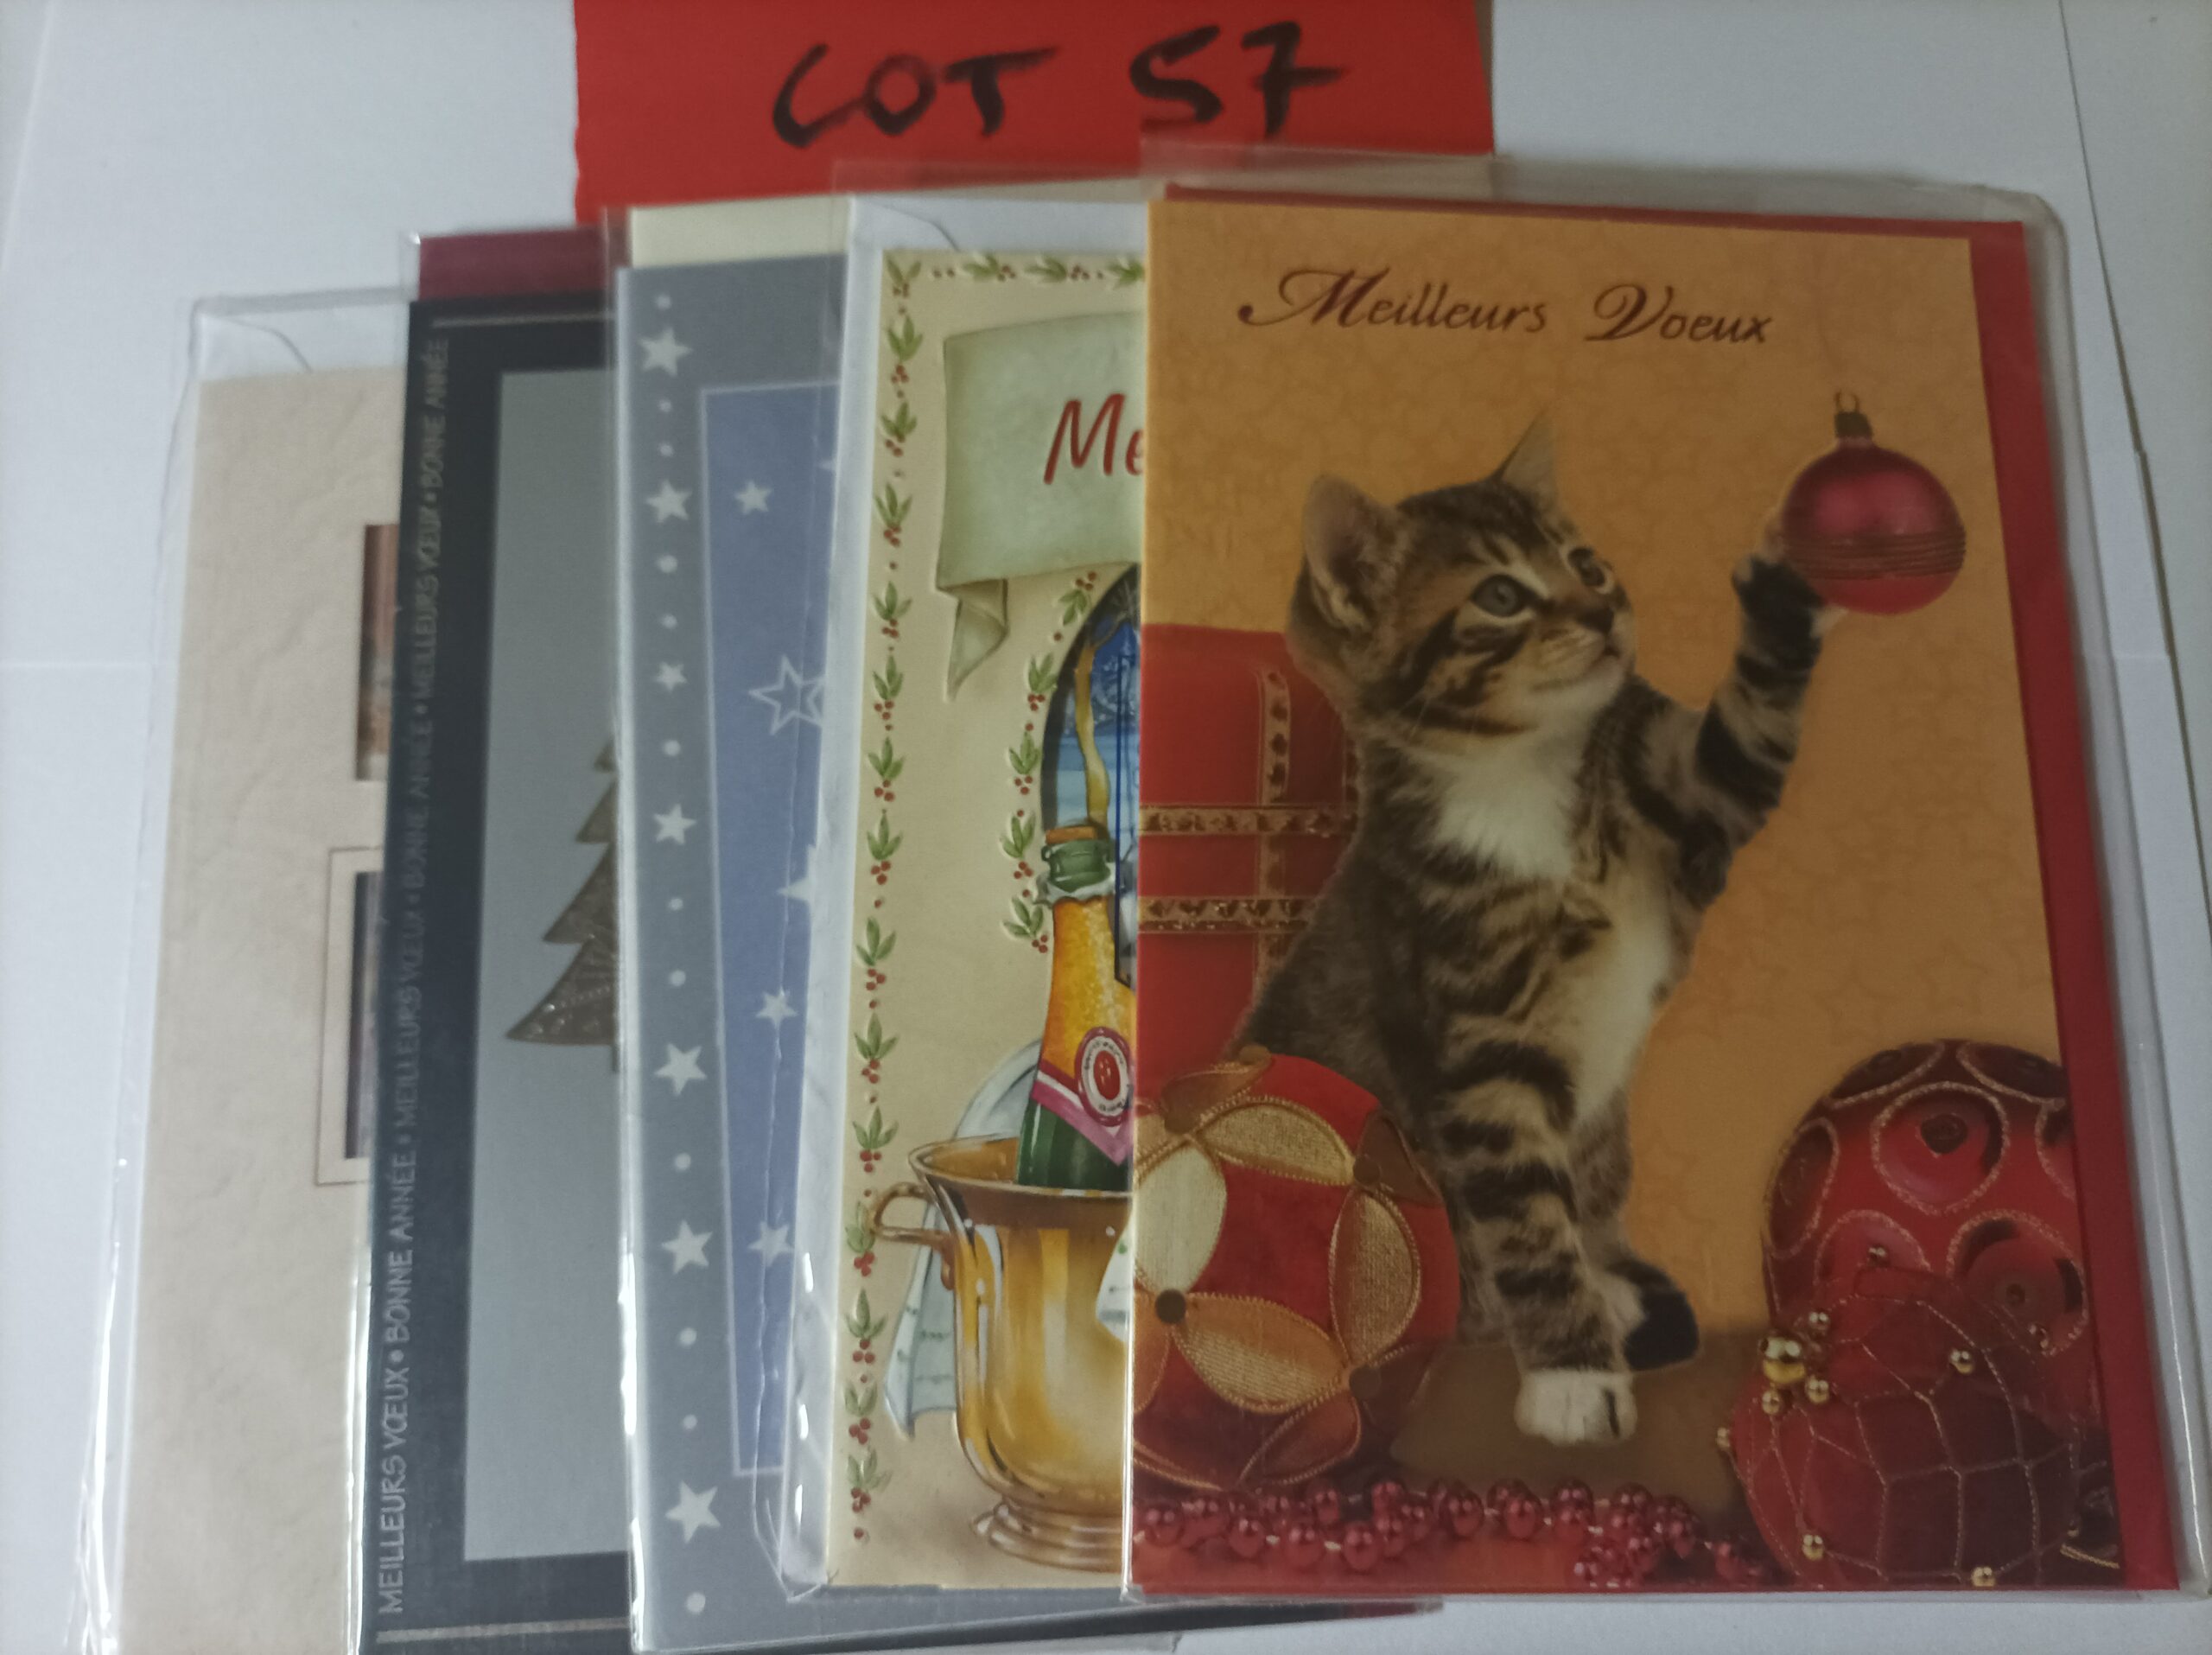 Lot de 5 cartes postales doubles avec enveloppes meilleurs vœux (lot 57)